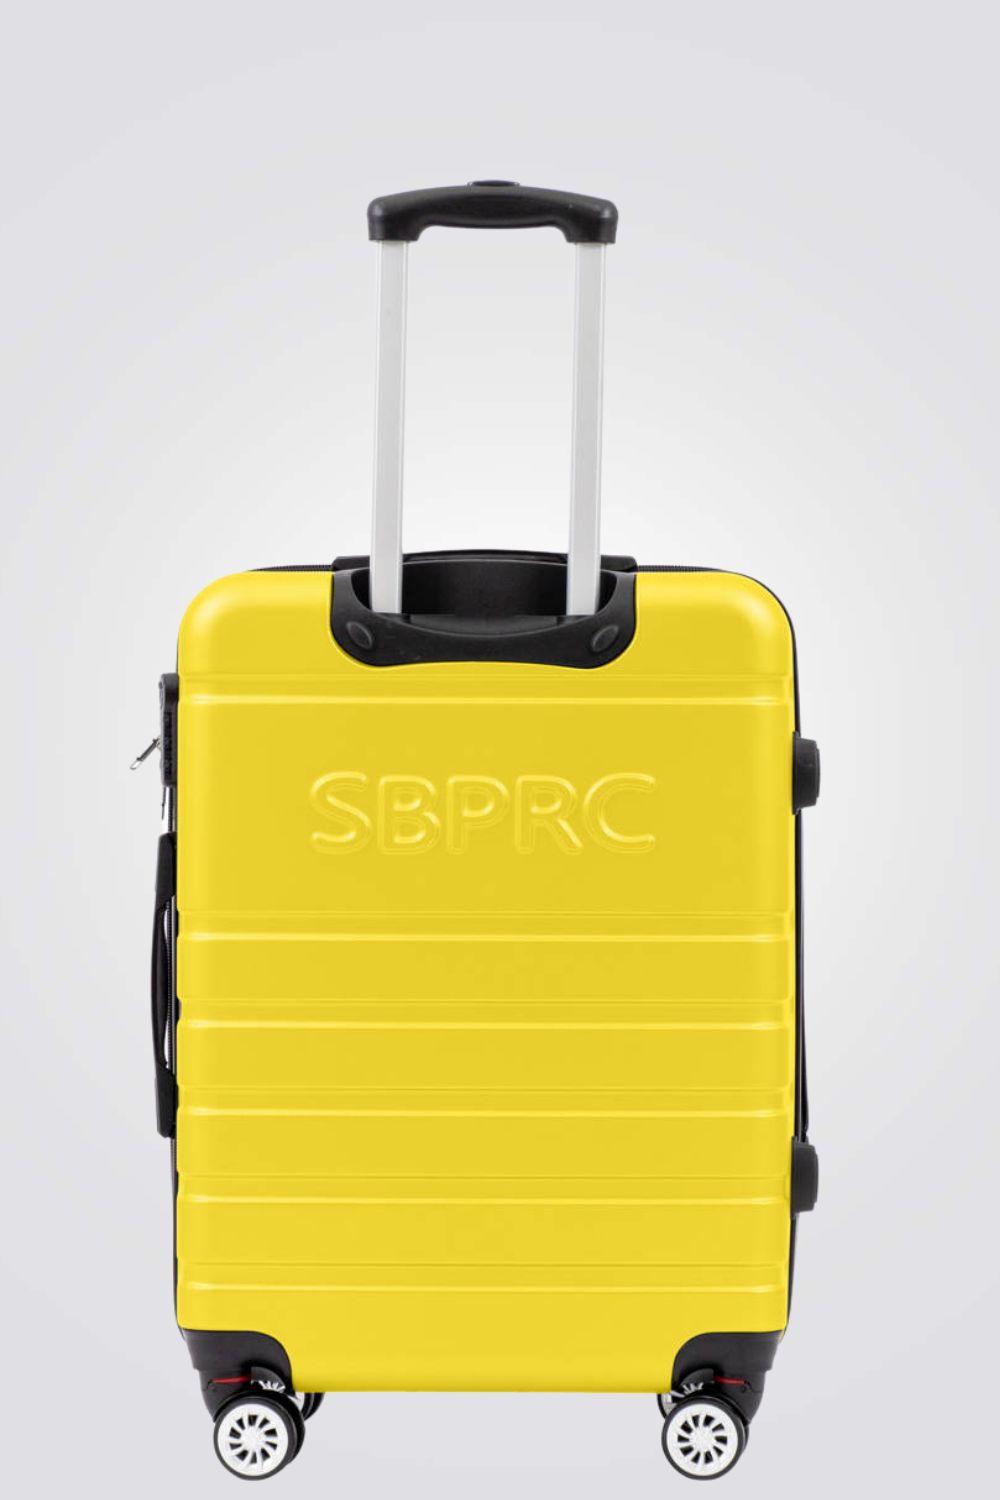 מזוודה קשיחה גדולה 28" דגם 1807 בצבע צהוב - MASHBIR//365